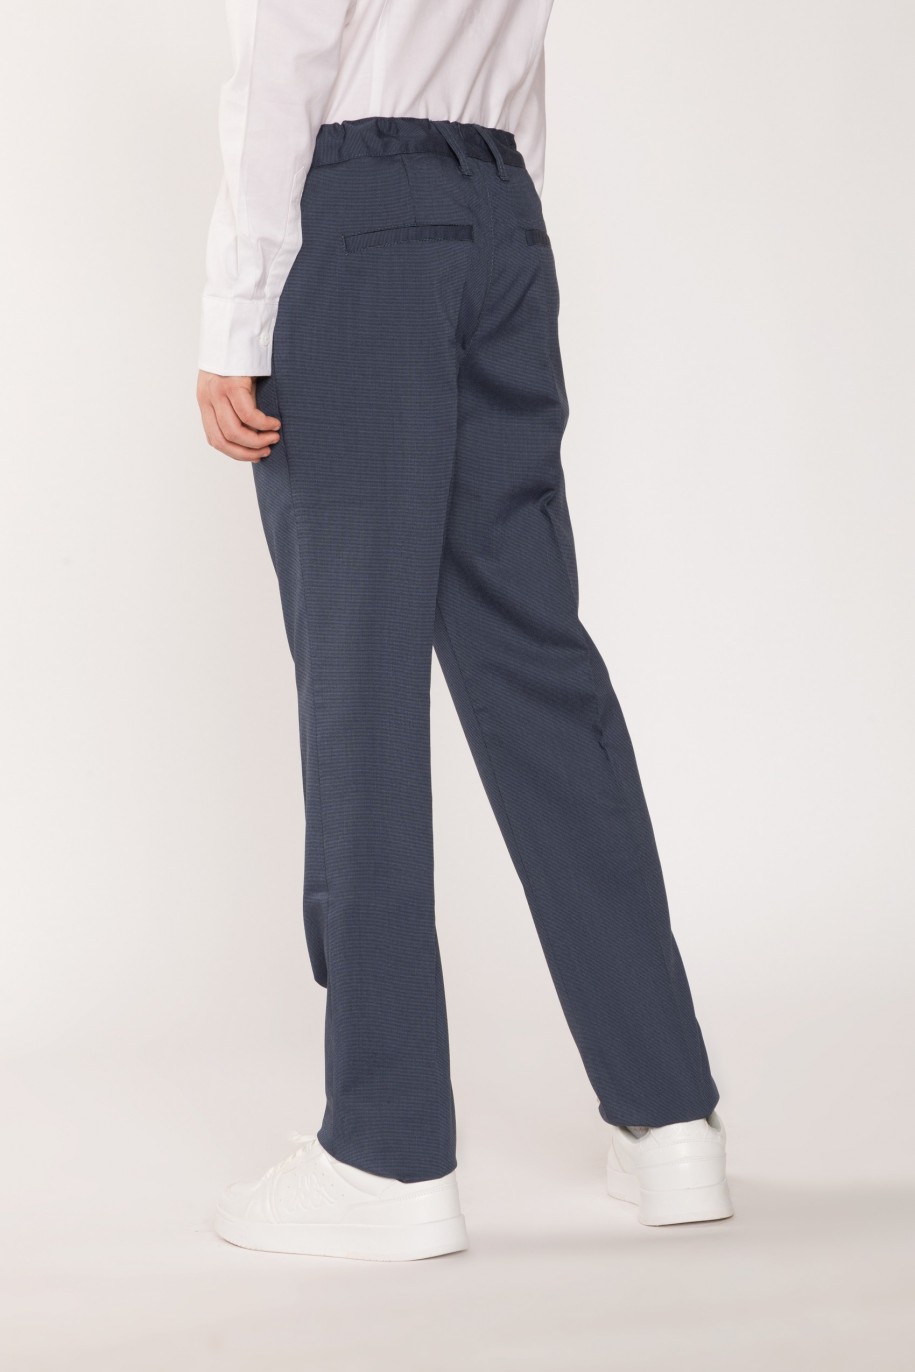 Eleganckie granatowe spodnie garniturowe dla chłopaka - 26474